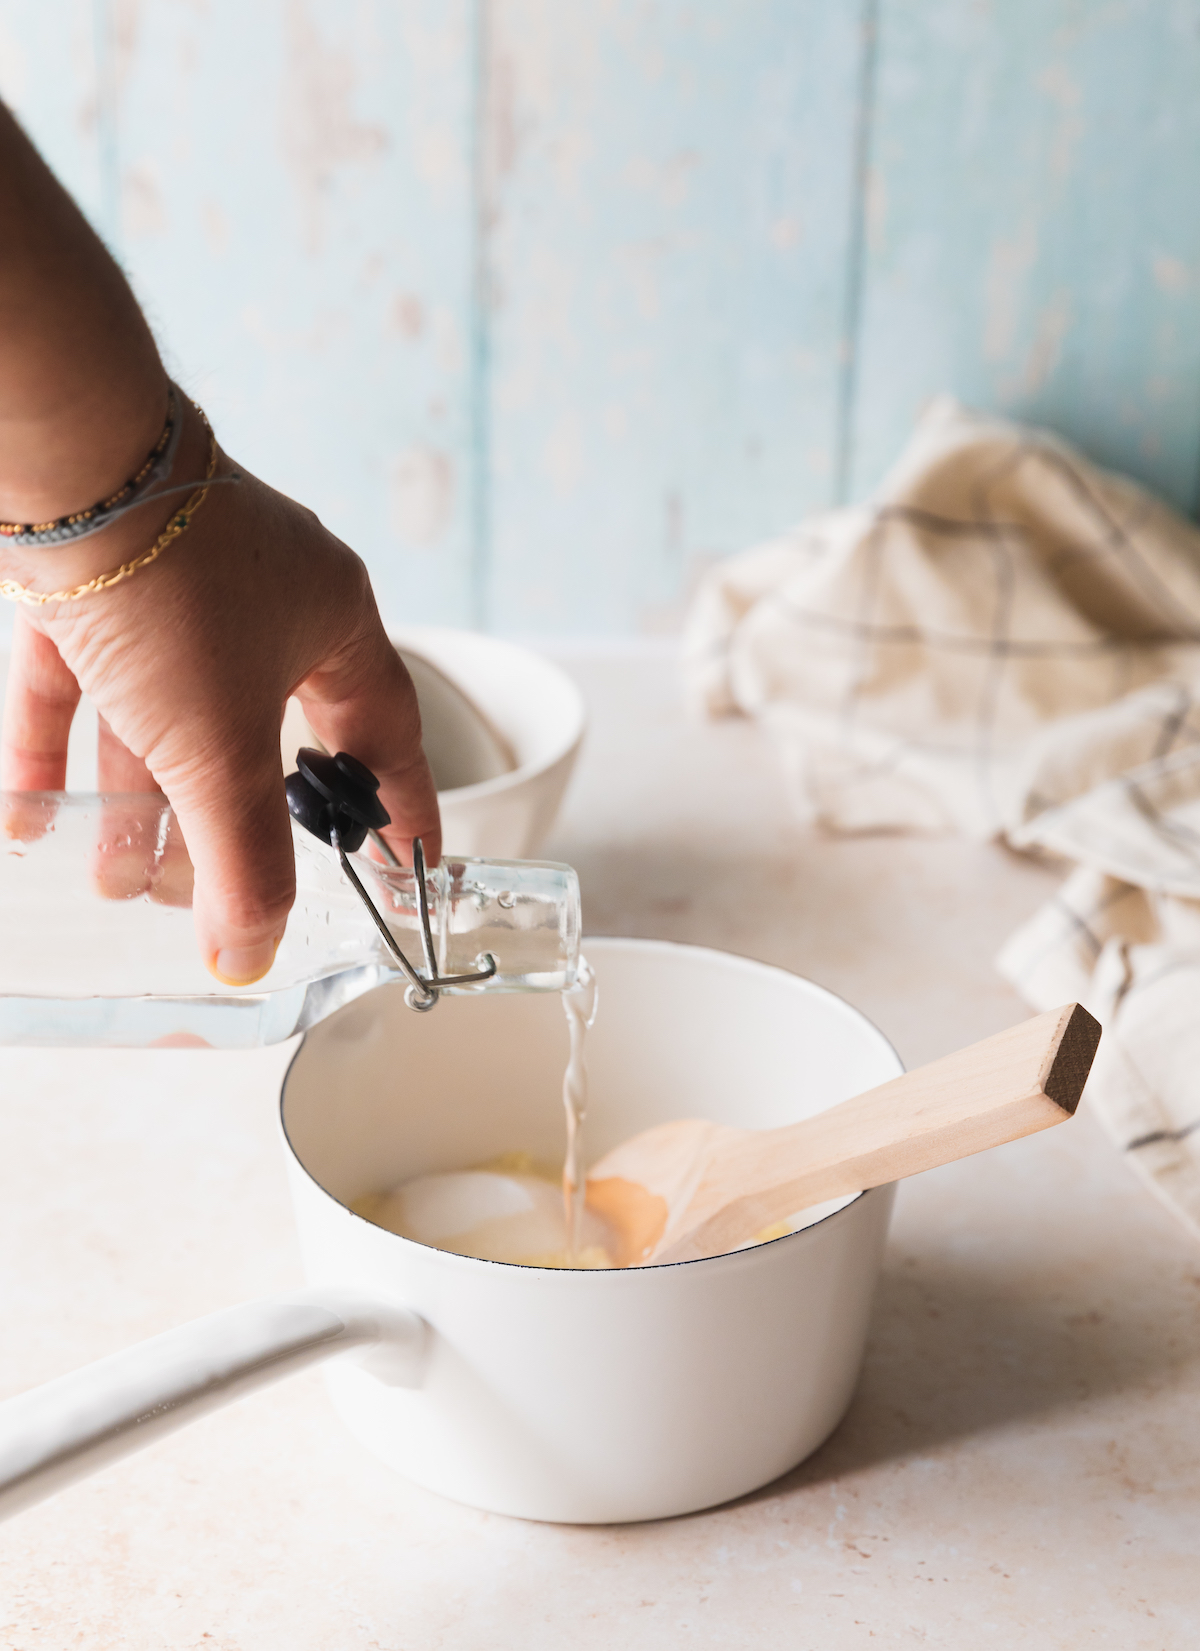 comment faire rapidement facilement recette lait concentré sucré